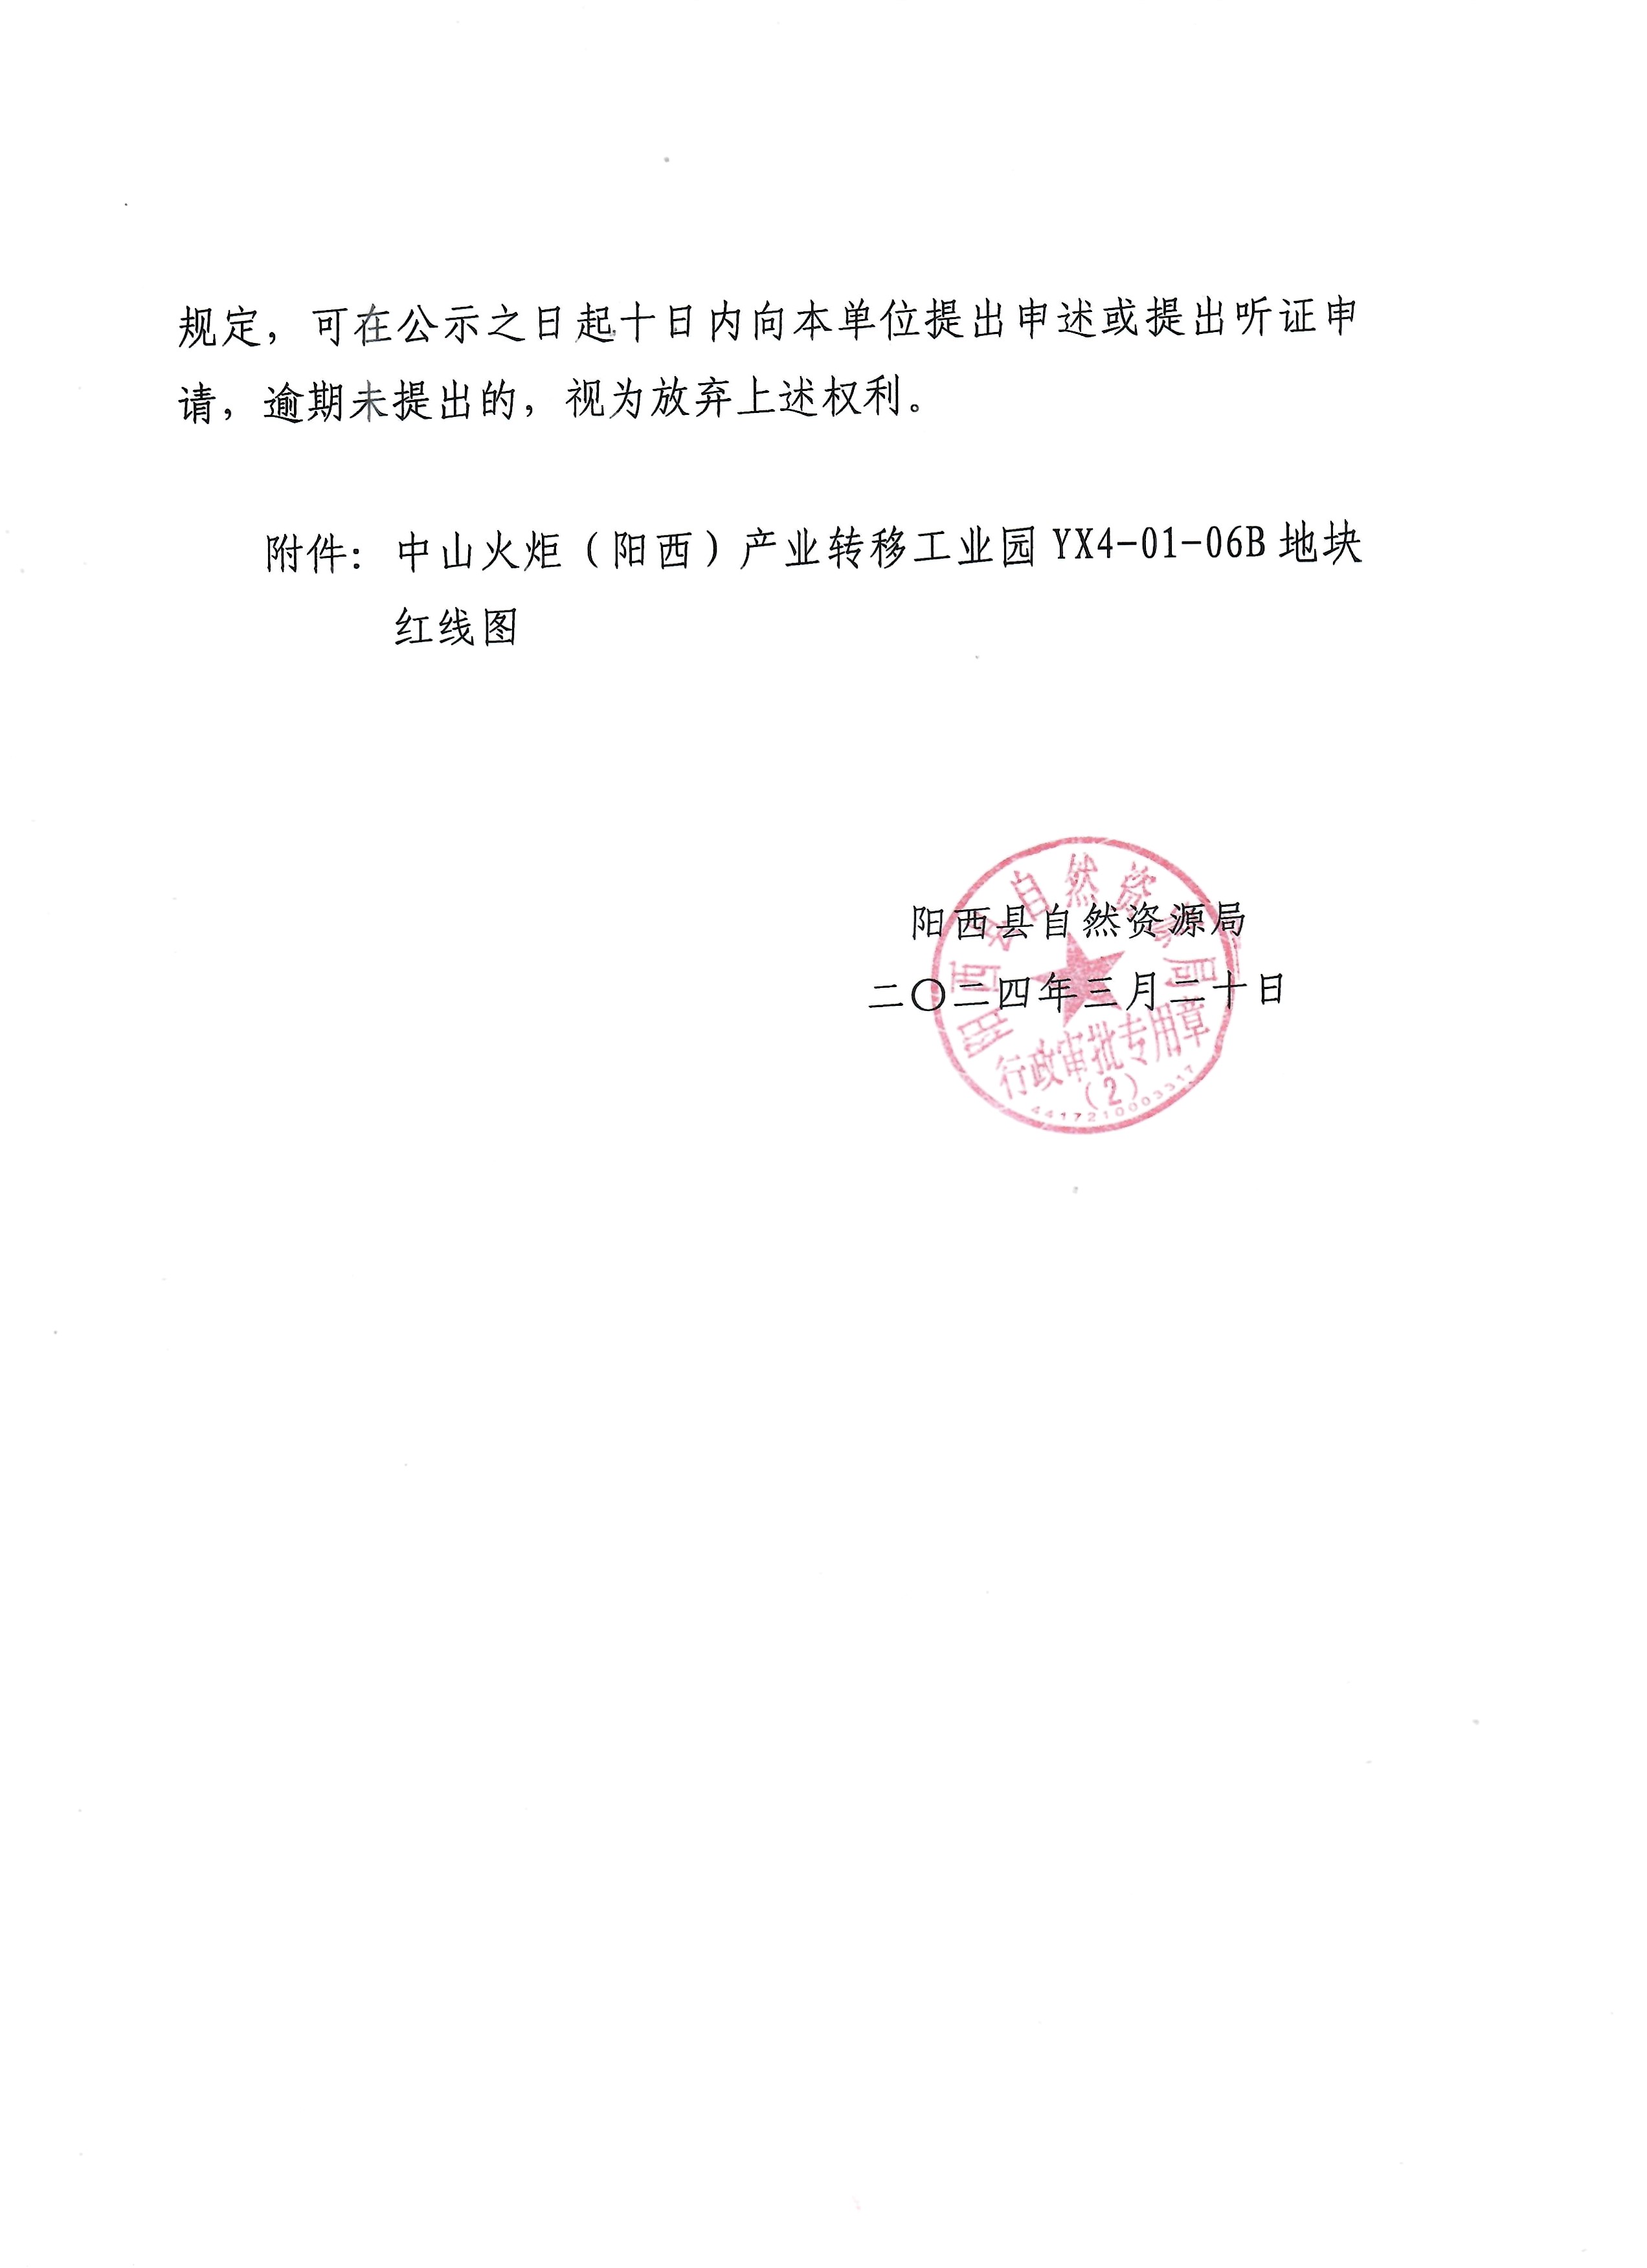 关于广东广和新材料有限公司申请办理《建设用地规划许可证》的批前公示2.jpg